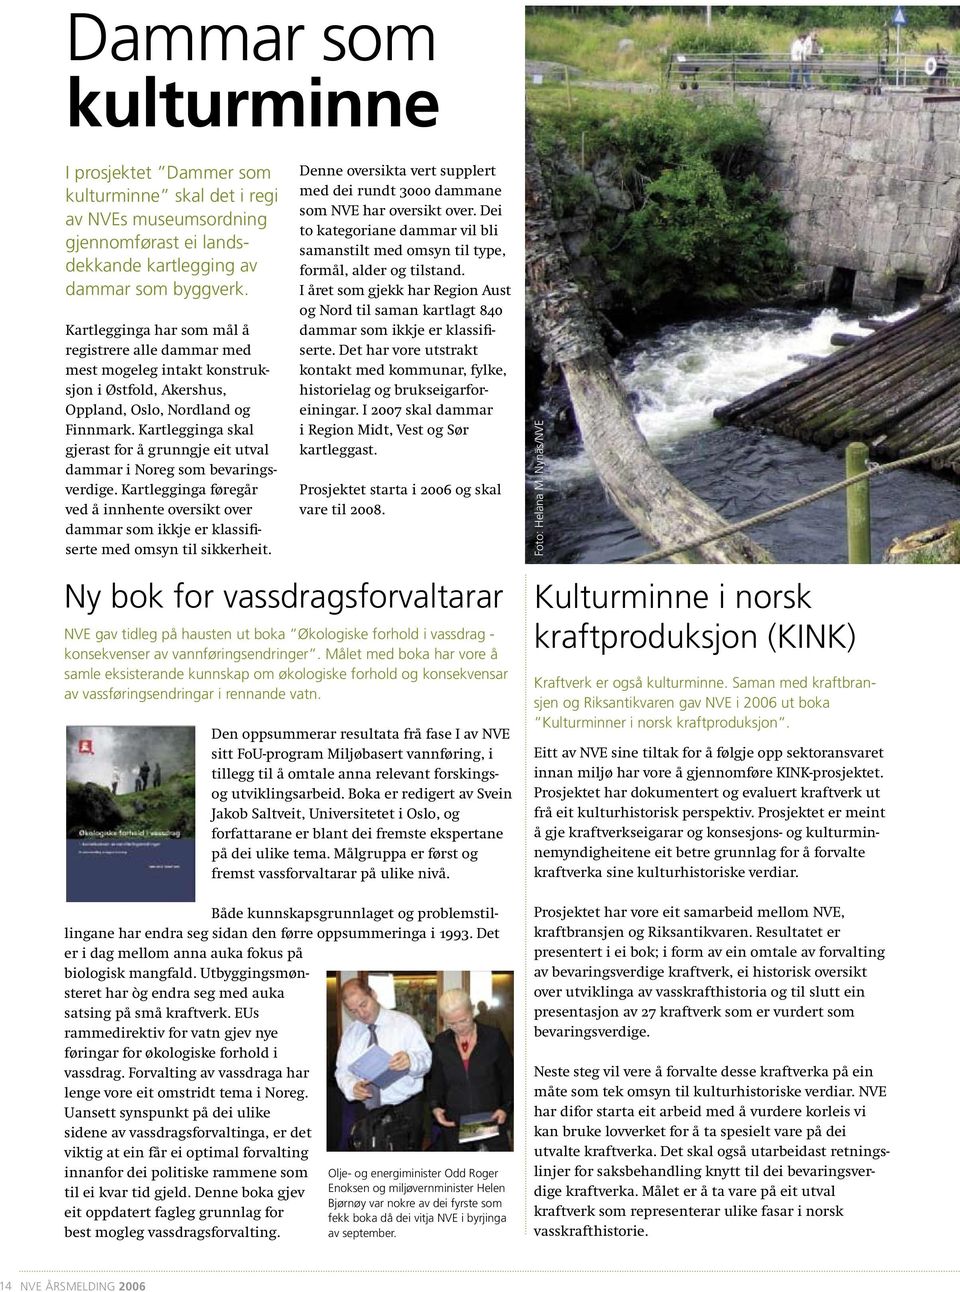 Kartlegginga skal gjerast for å grunngje eit utval dammar i Noreg som bevaringsverdige. Kartlegginga føregår ved å innhente oversikt over dammar som ikkje er klassifiserte med omsyn til sikkerheit.